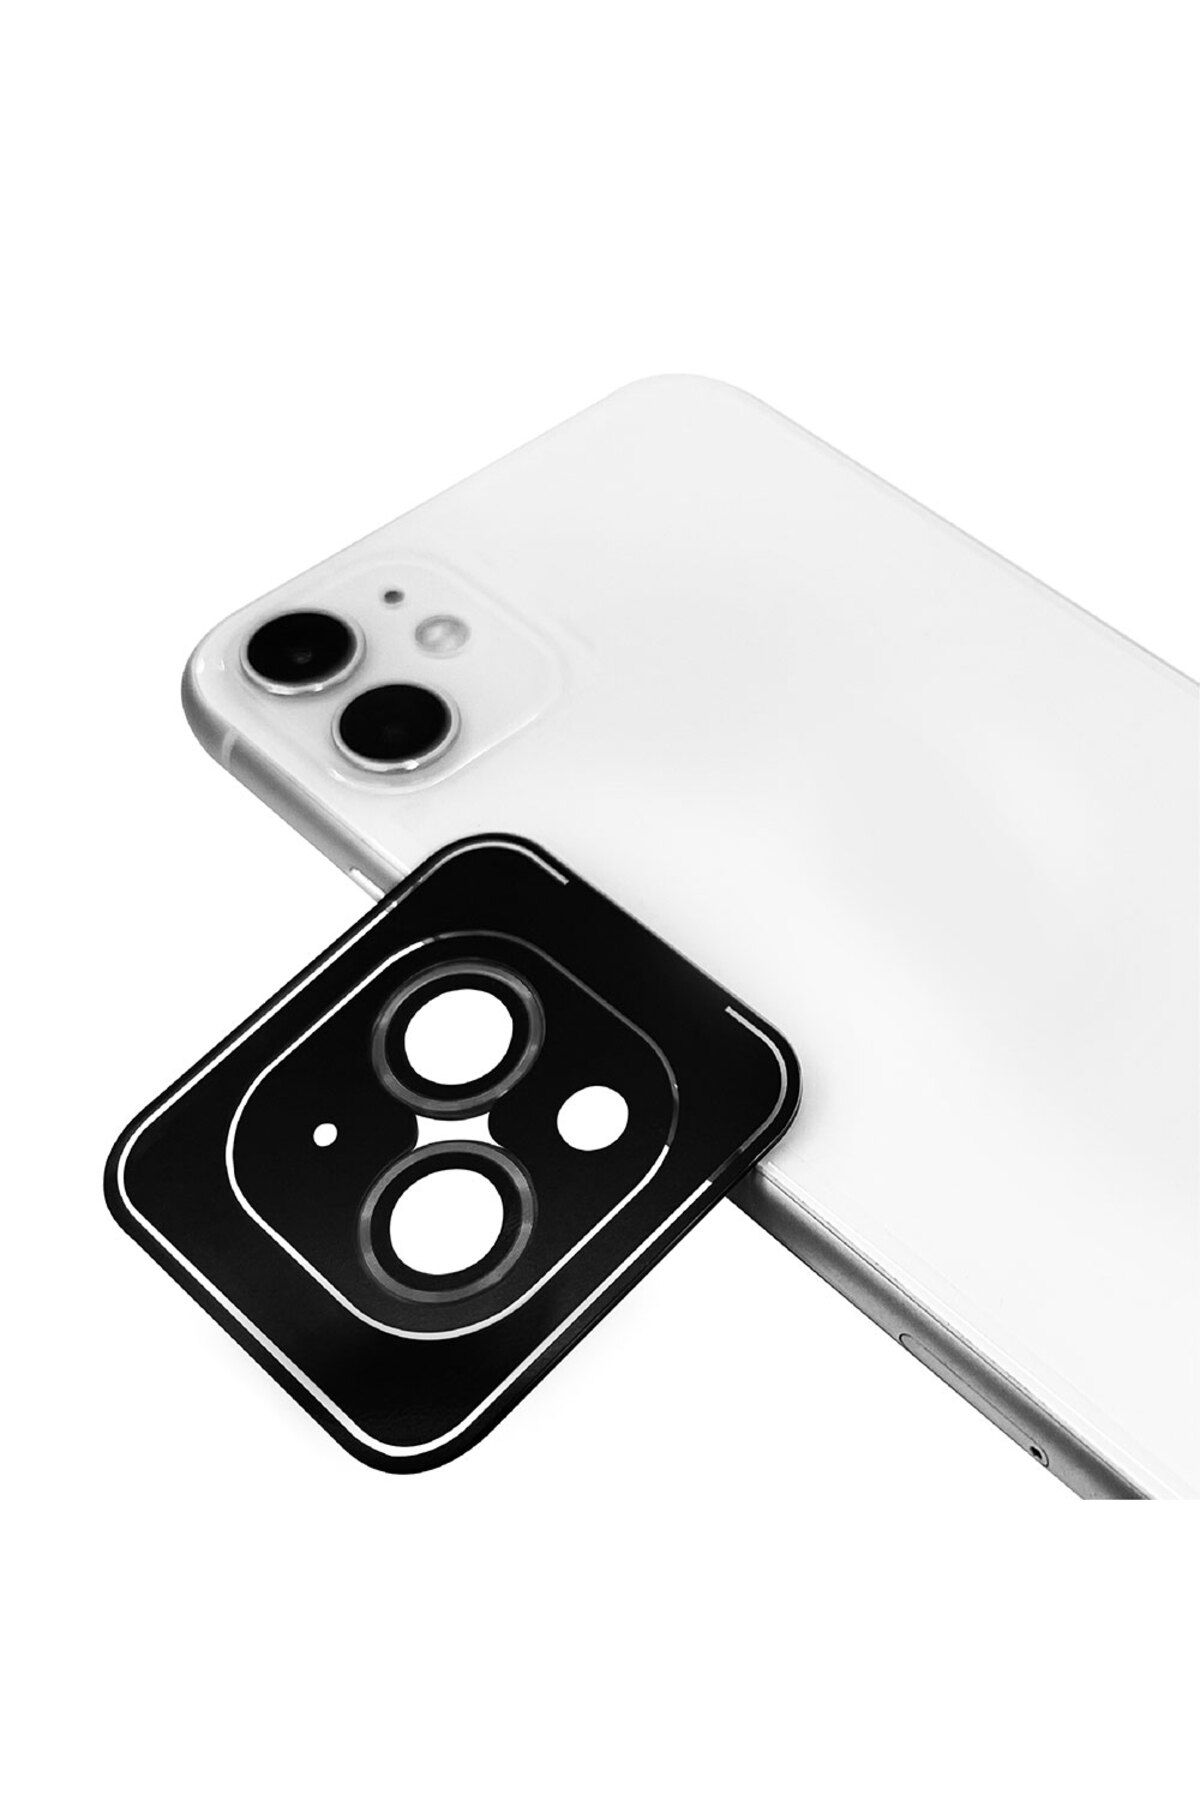 HEPTEKİLETİŞİM Iphone 12 Mini Kamera Lens Koruyucu Renkli Tasarım Kolay Takma Aparatlı (CL-09)